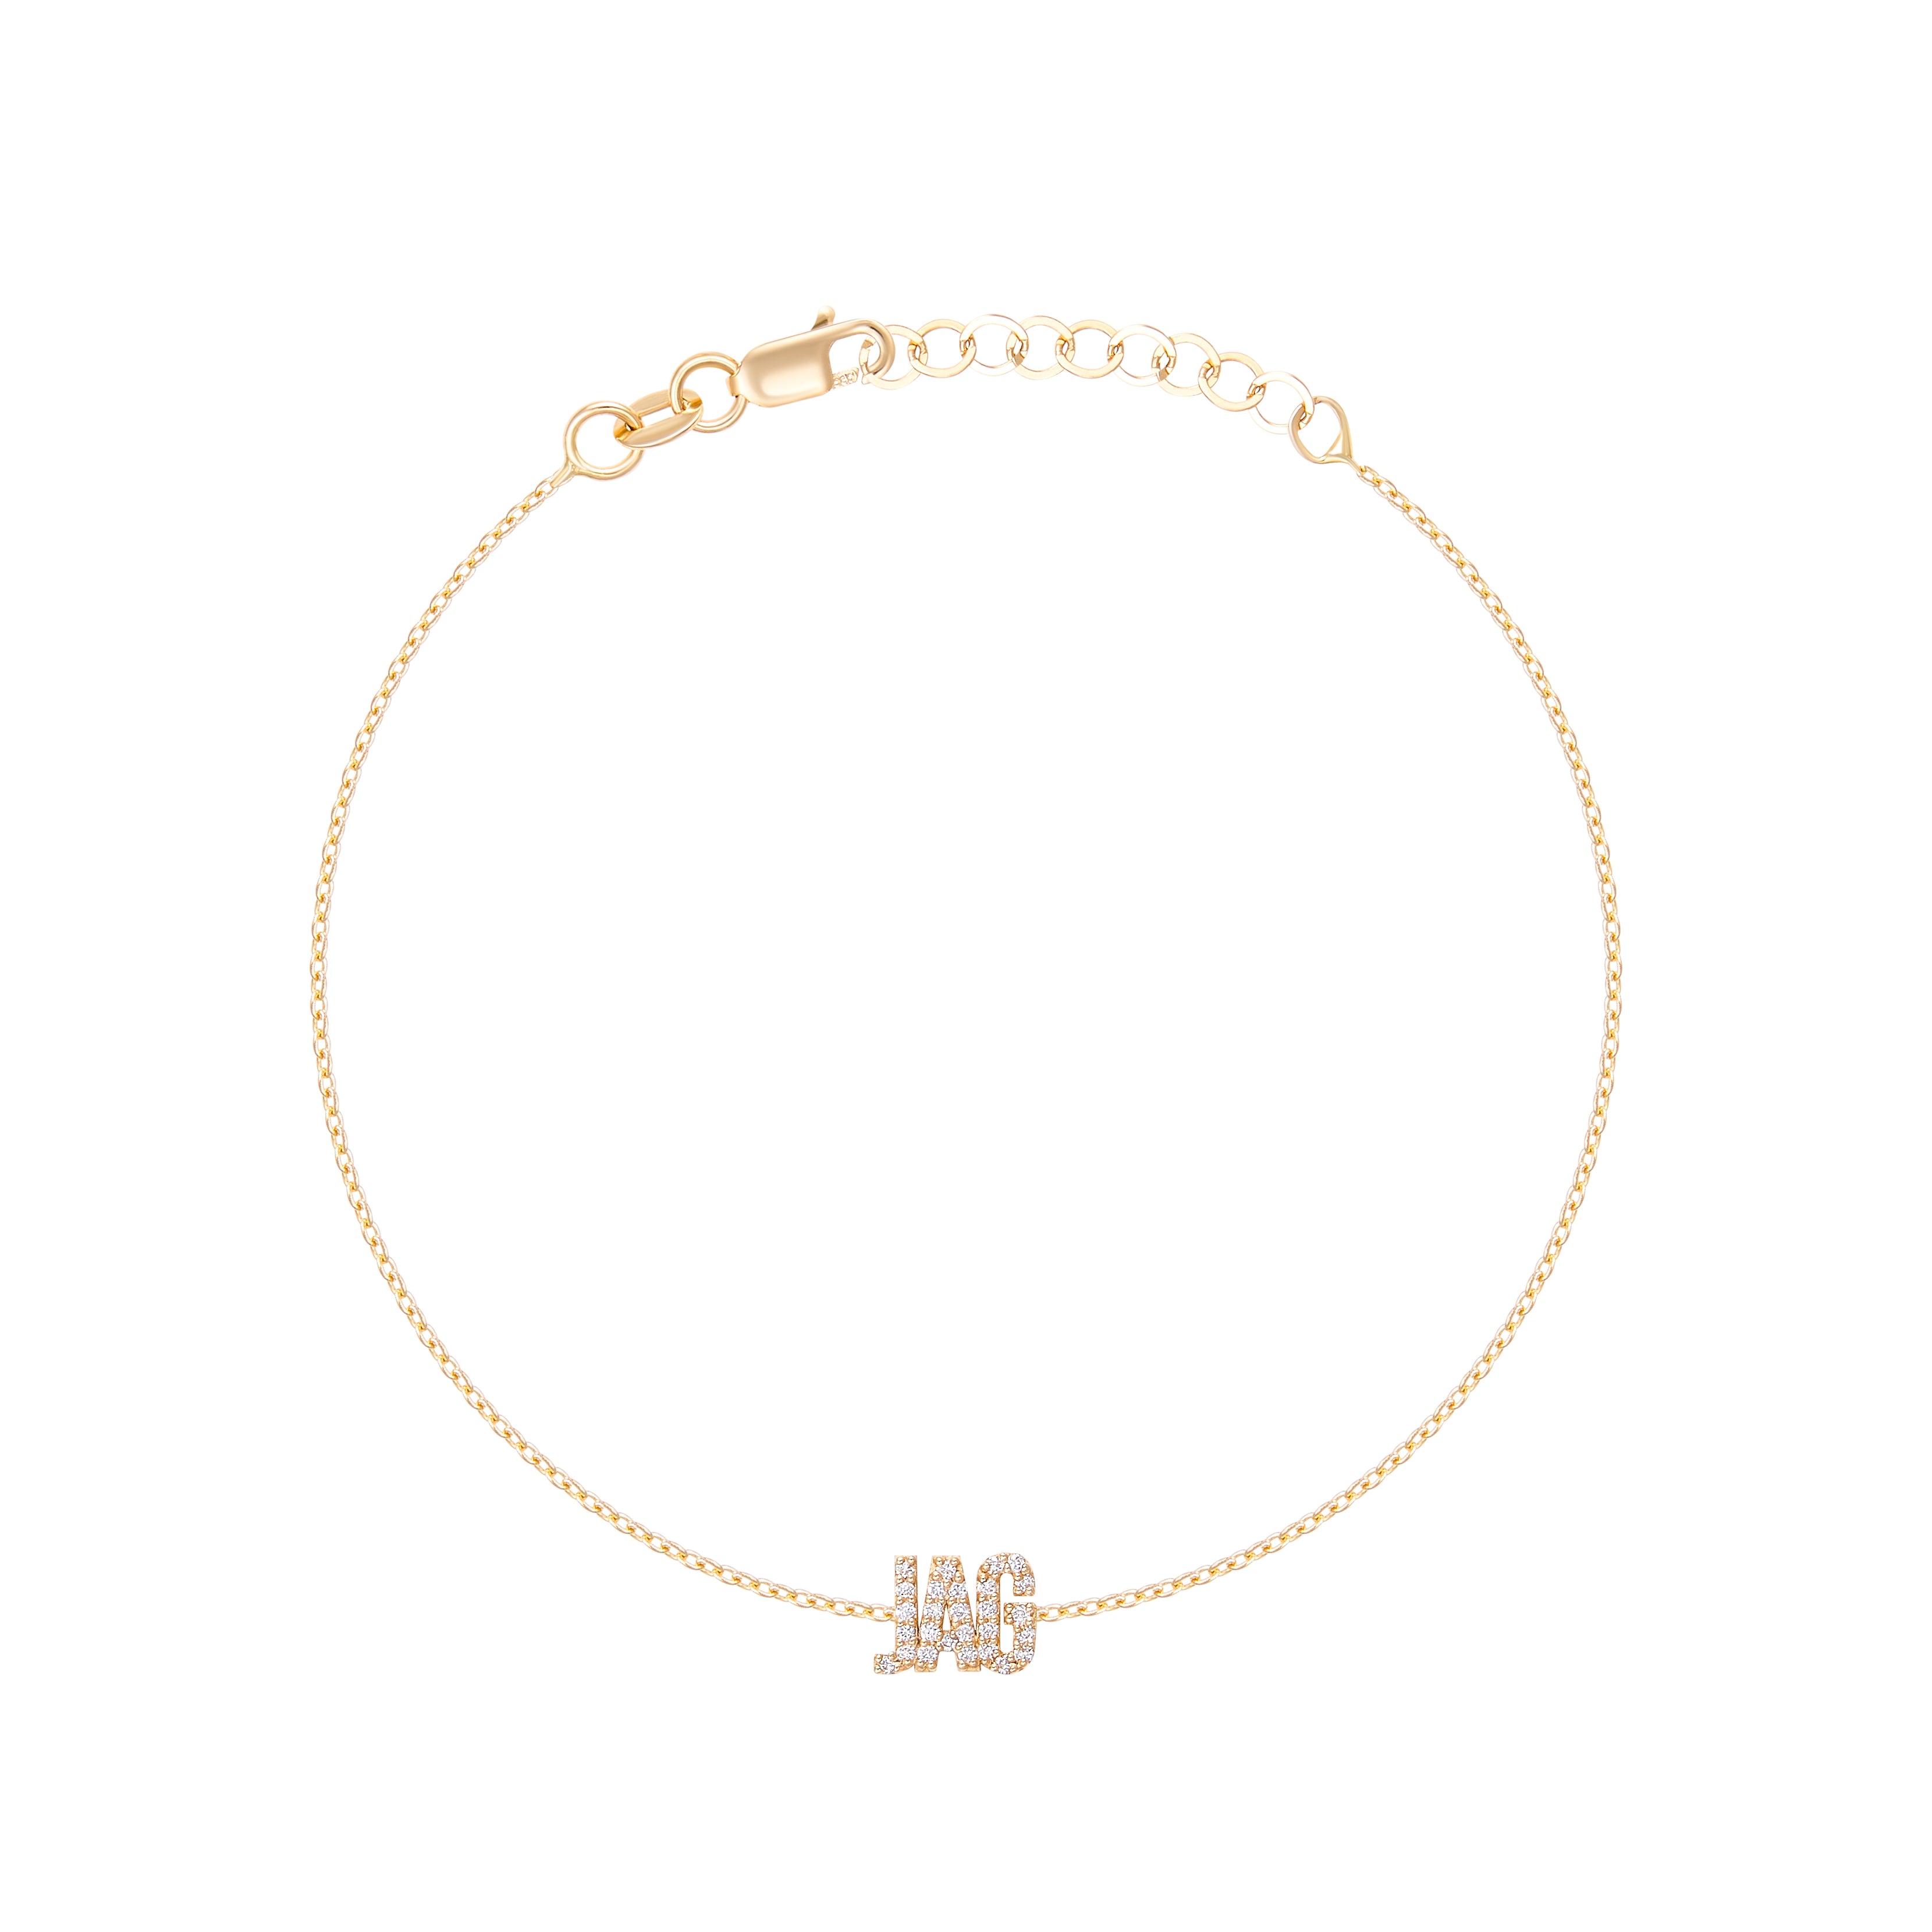 Zales Lowercase Script Name Bracelet in 10K Gold (1 Line)